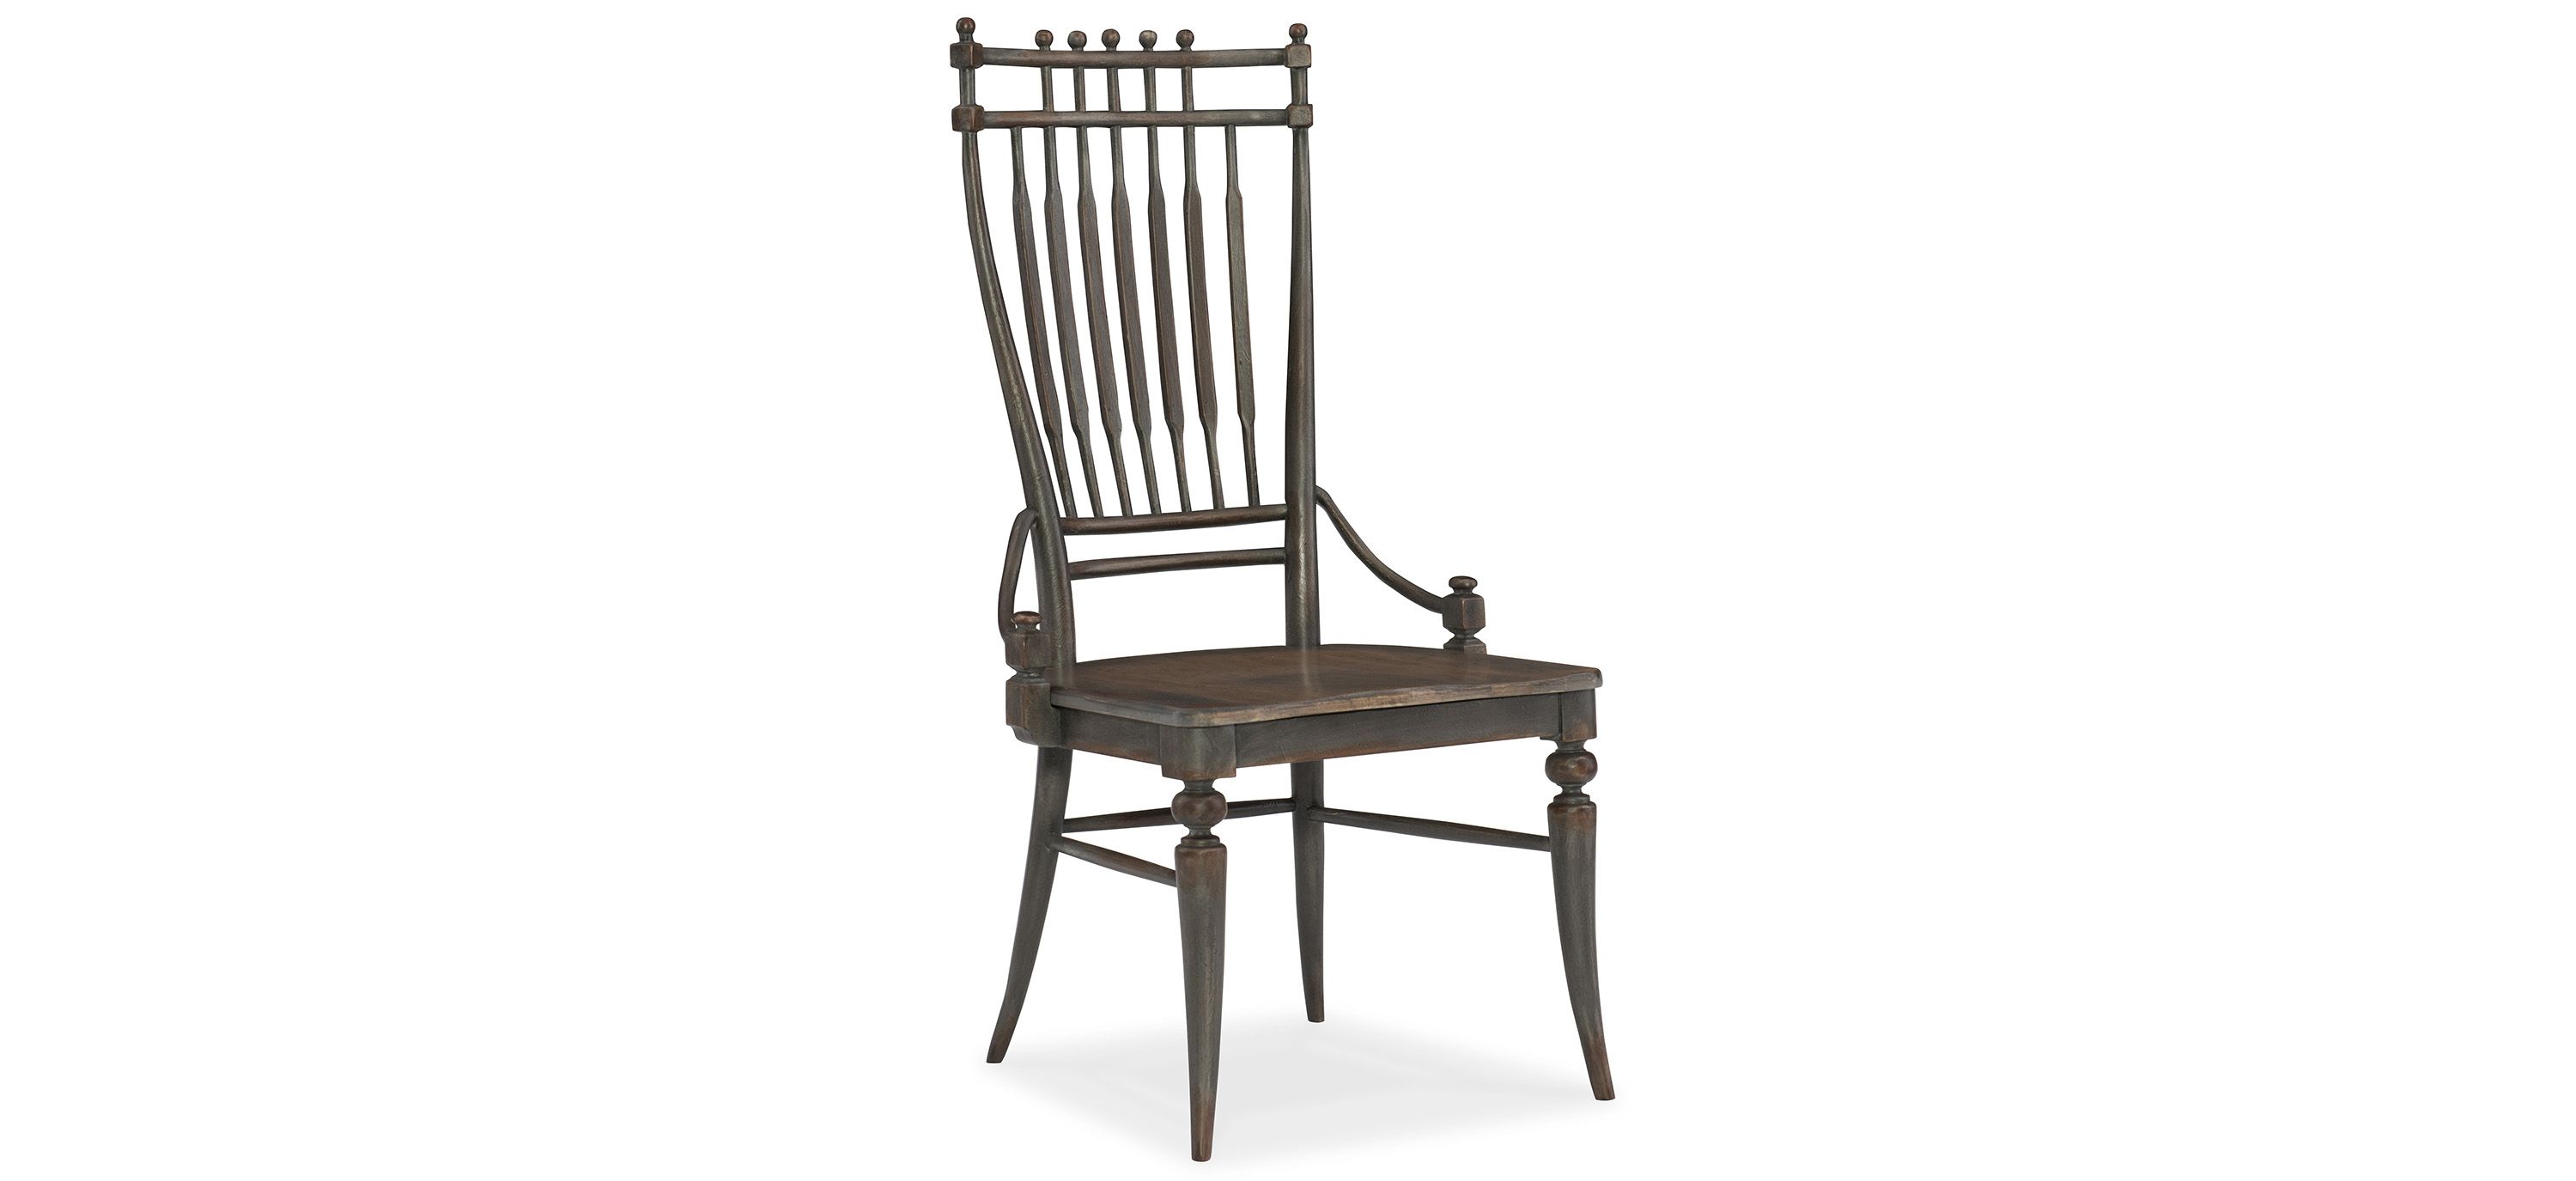 Arabella Windsor Side Chair - Set of 2